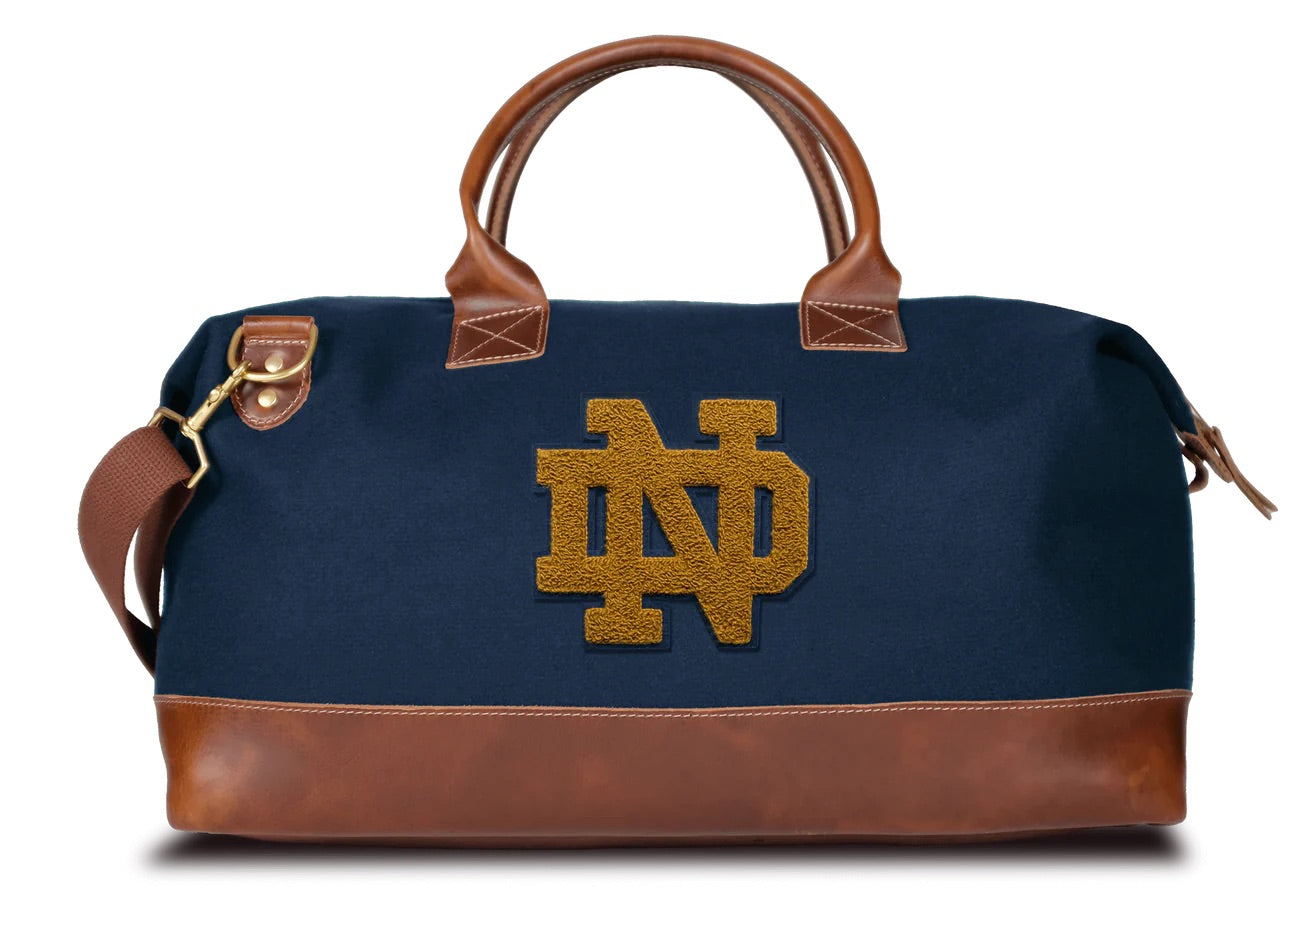 Notre Dame "ND" Weekender Duffle Bag in Navy